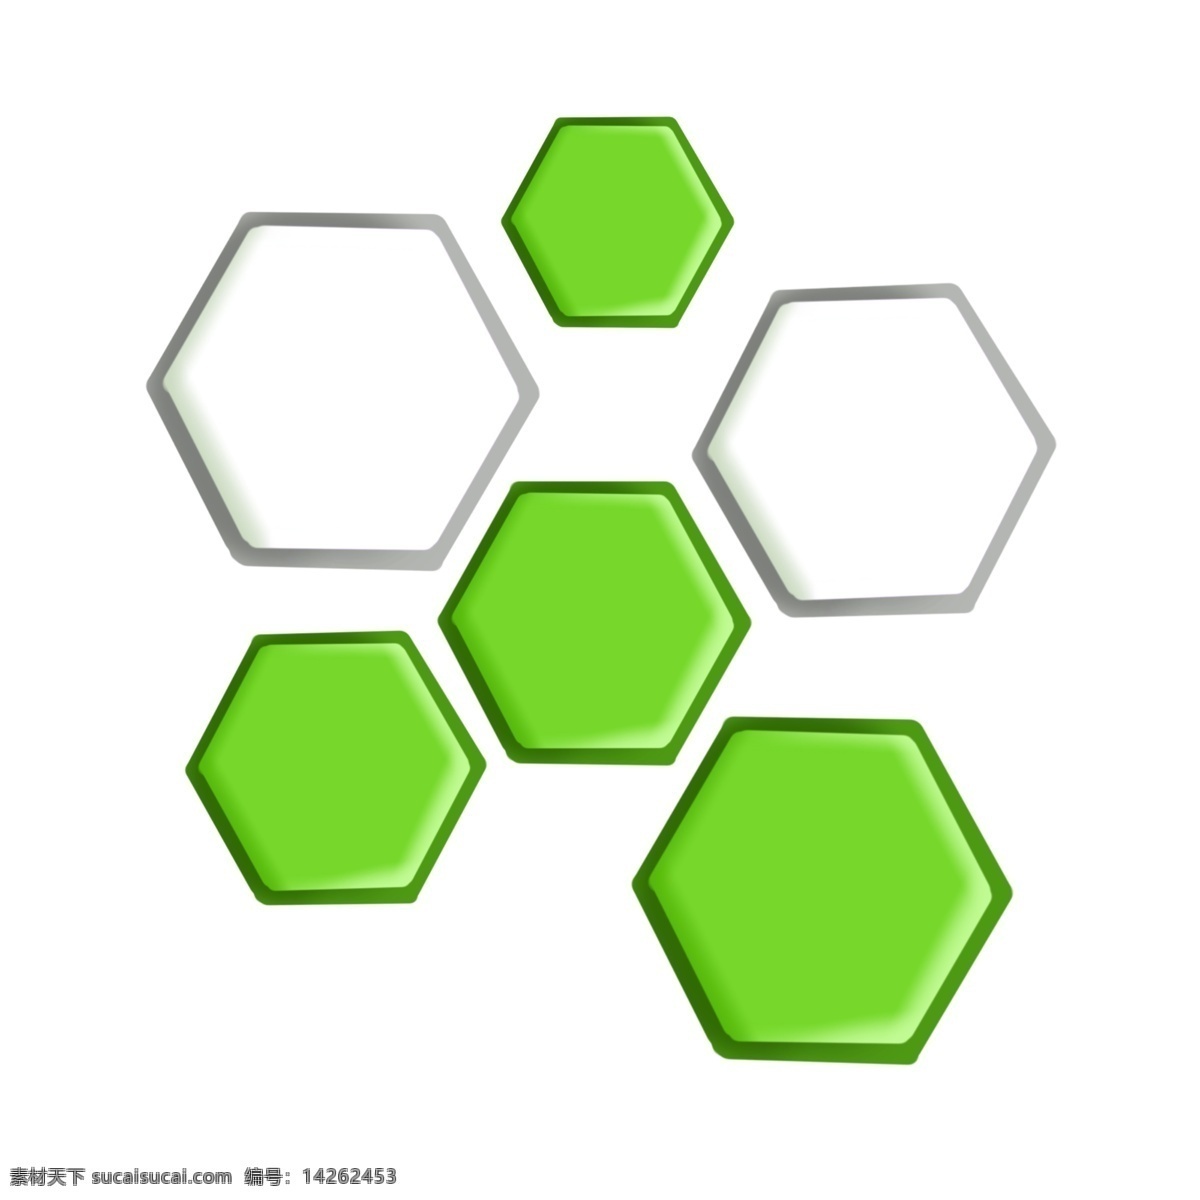 绿色 图表 插画 绿色的图表 ppt图表 图表装饰 图表插画 立体图表 卡通图表 分类图表